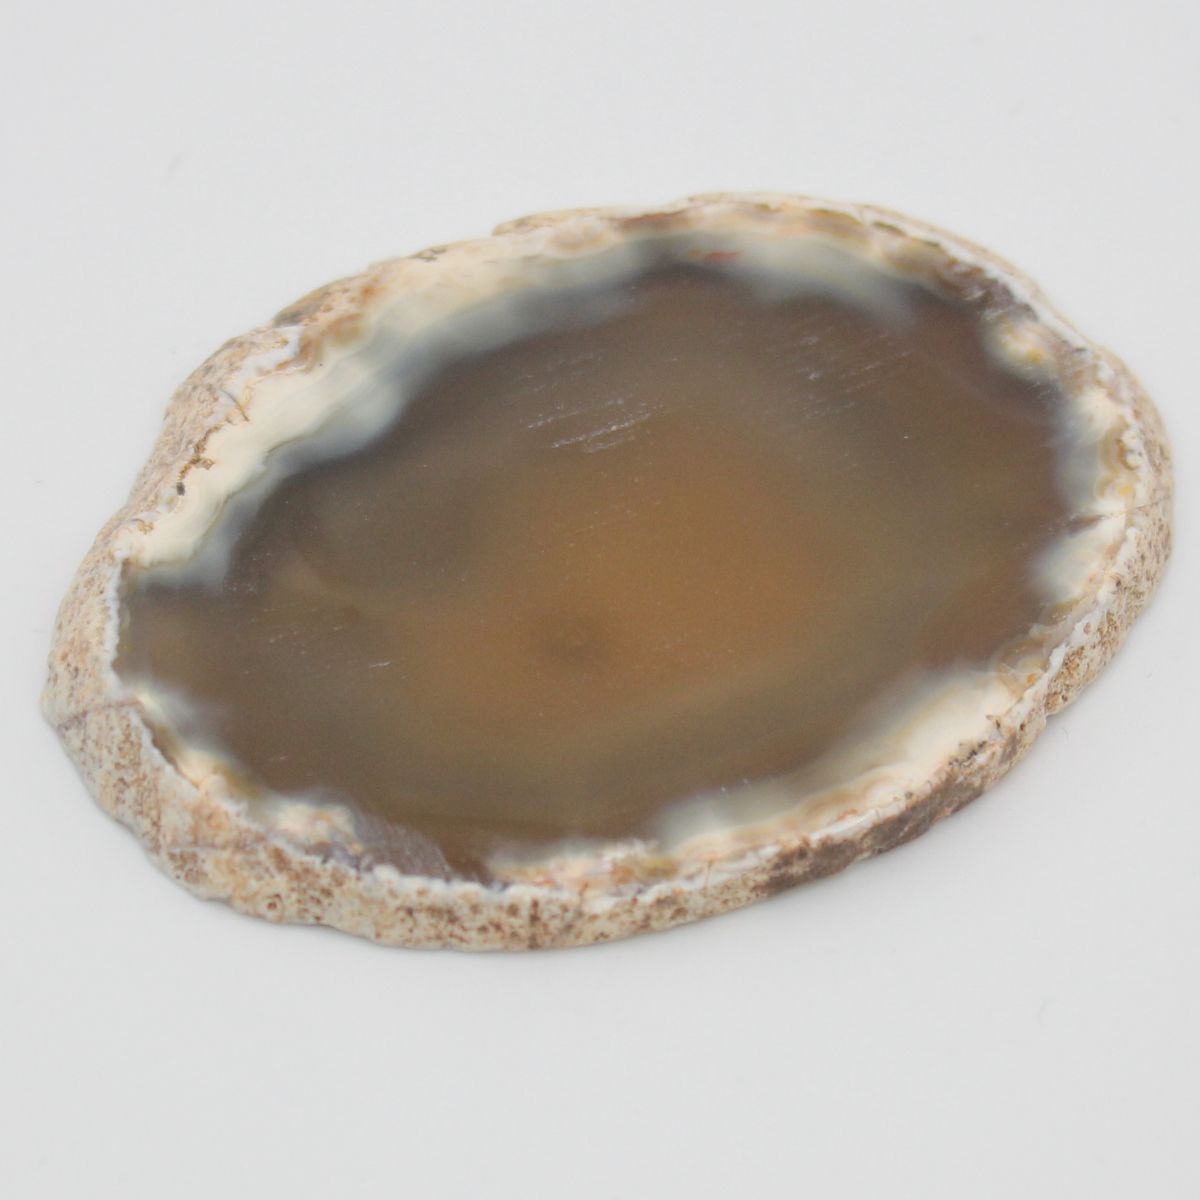 Piedra/Mineral Ágata Laminada Marrón Claro 6-10cm